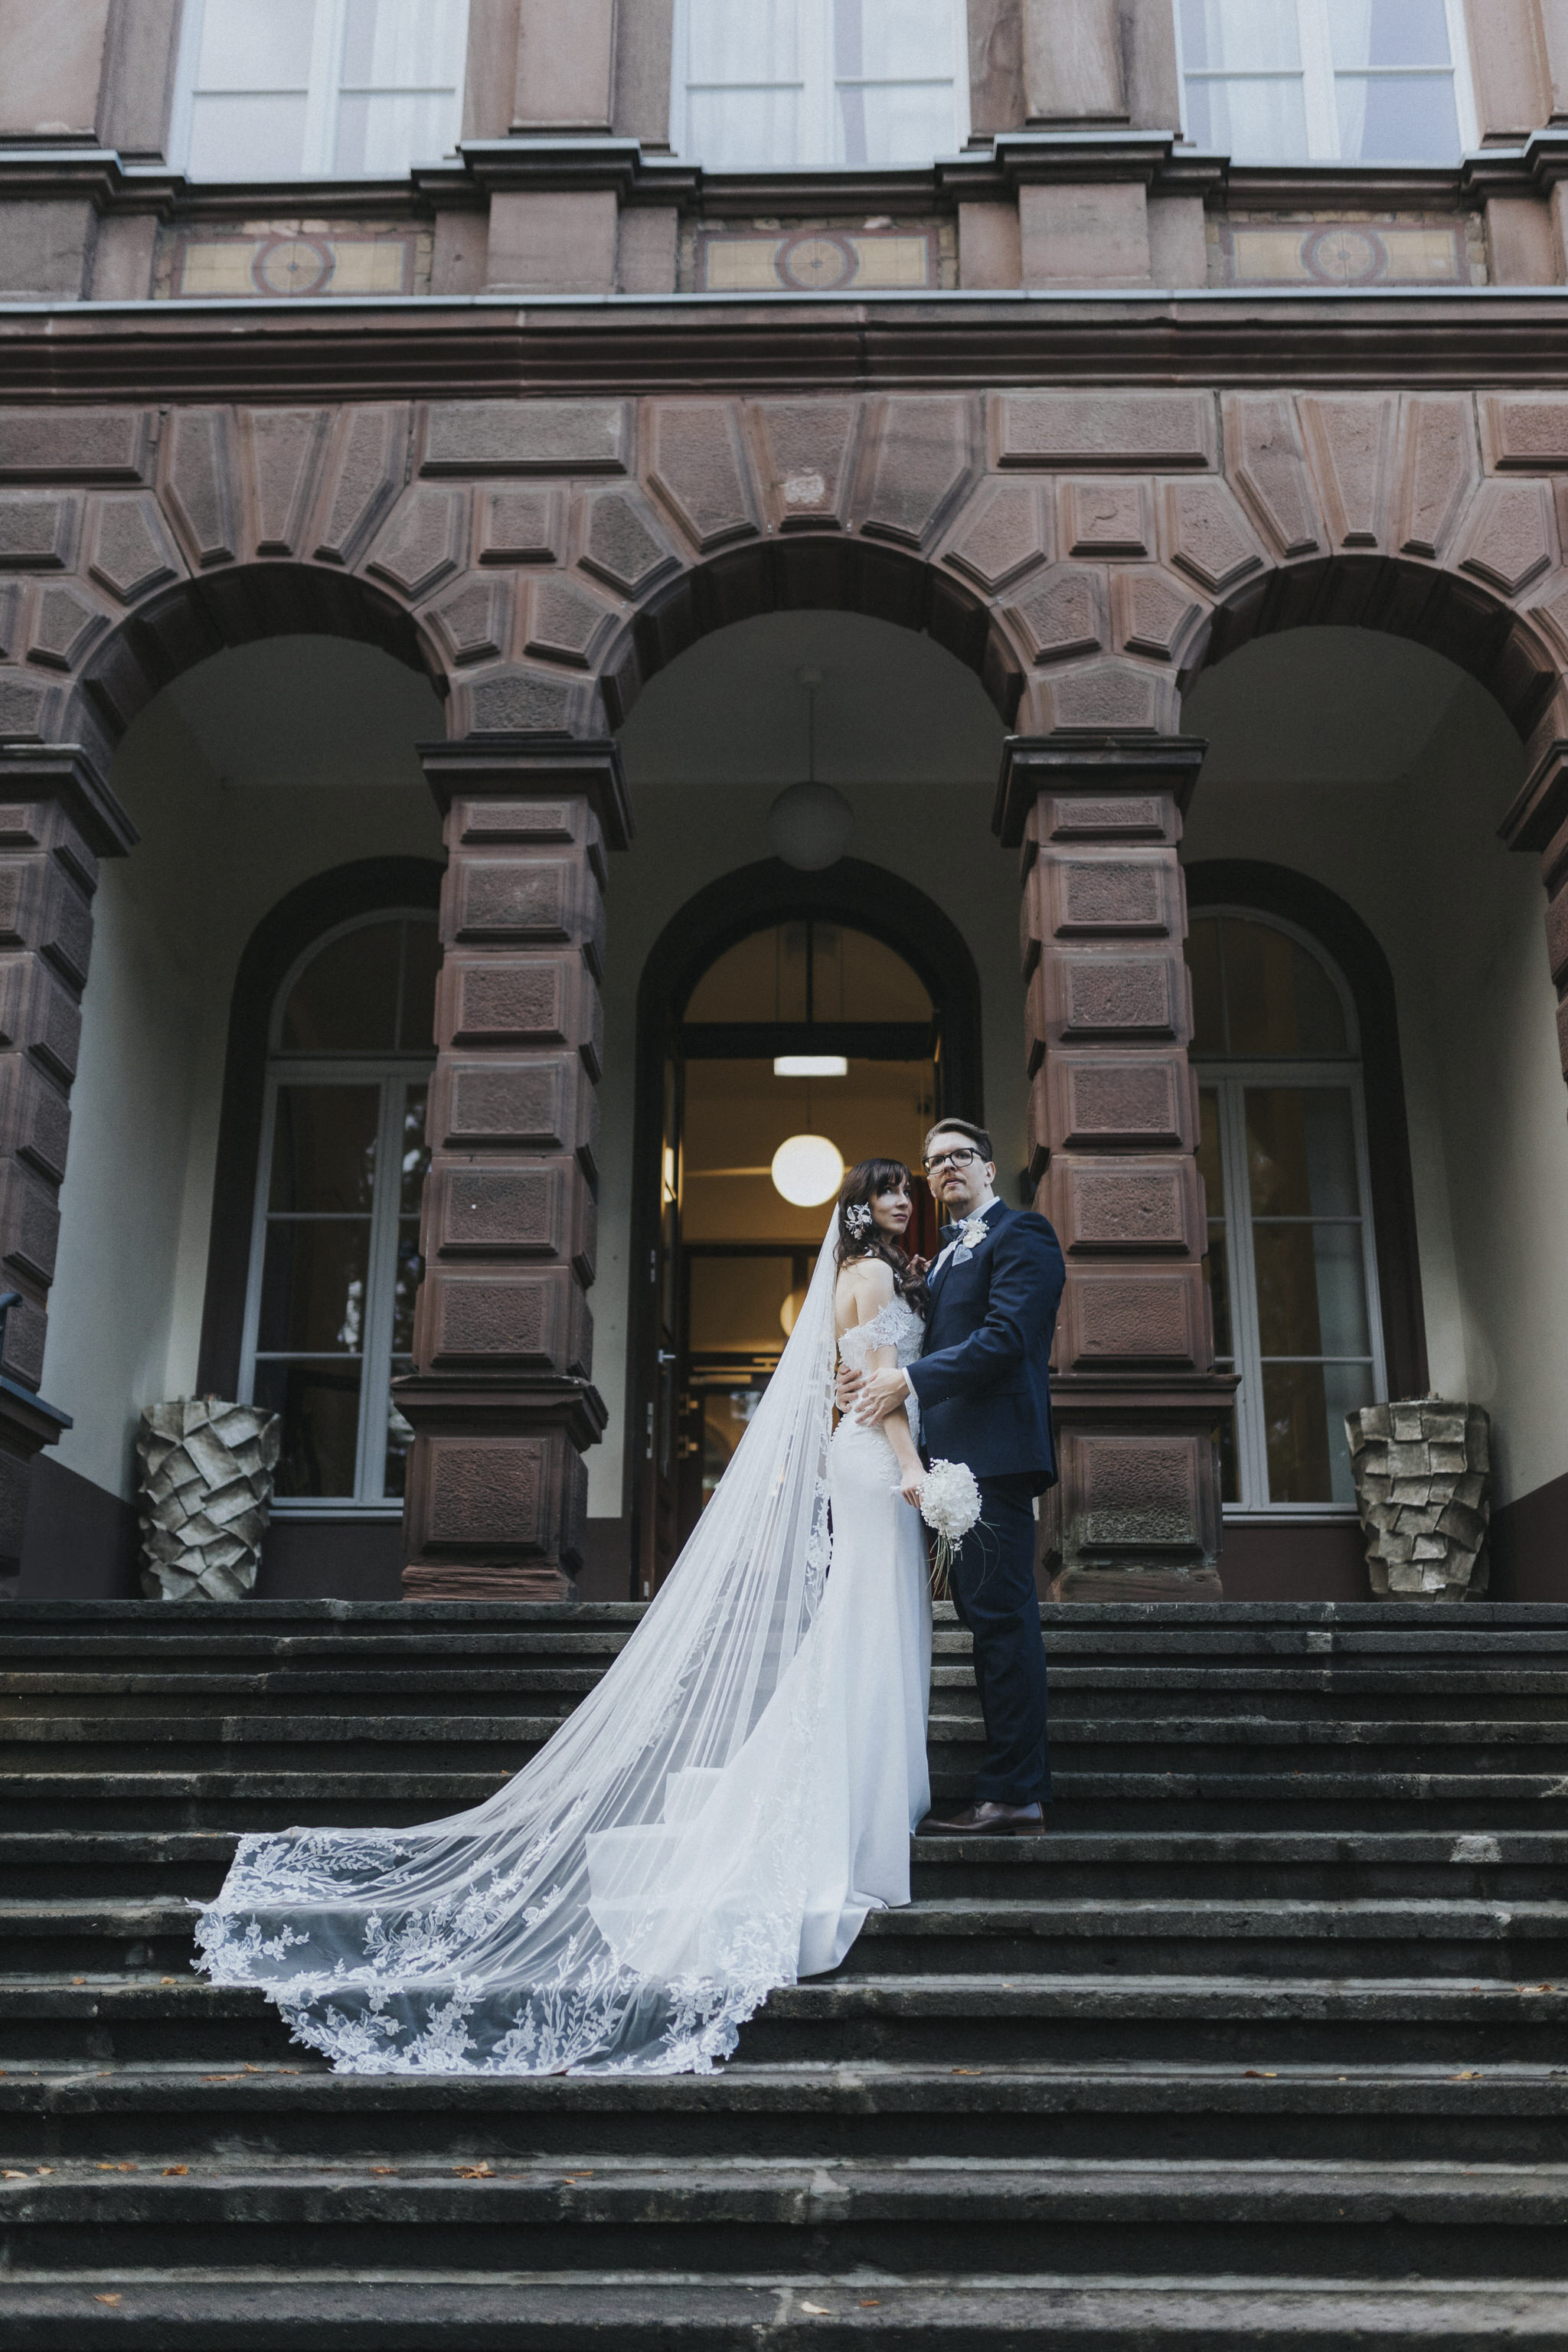 Verliebtes Brautpaar vor den historischen Elementen des Kaiserbahnhofs – romantische Brautpaarfotos, die die Liebe inmitten des charmanten Ambientes einfangen.